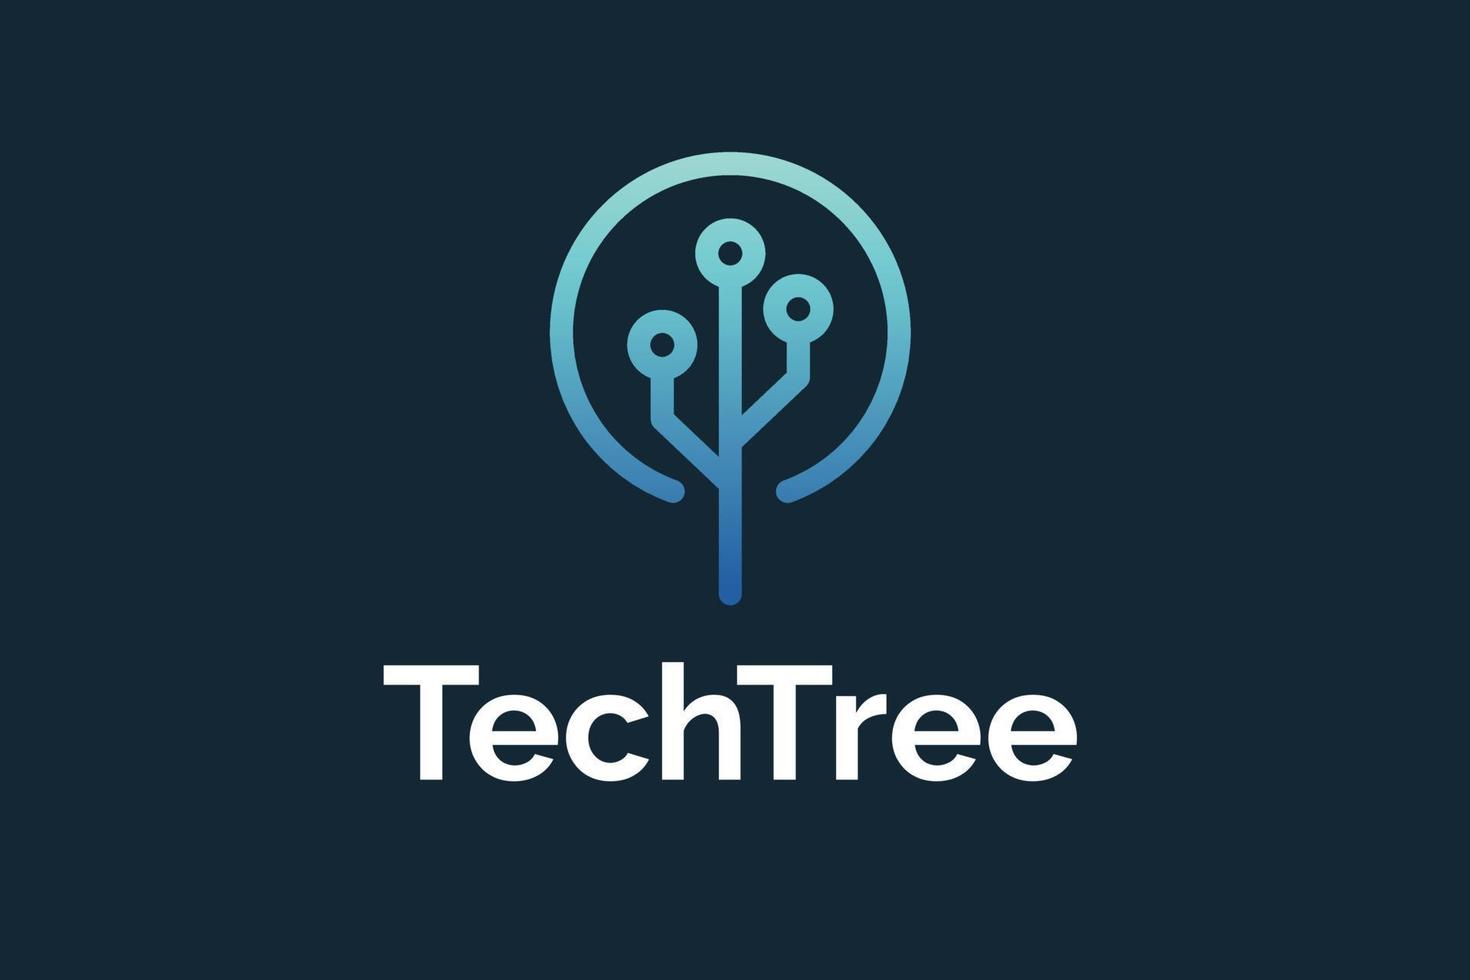 création de logo d'arbre techno minimaliste vecteur